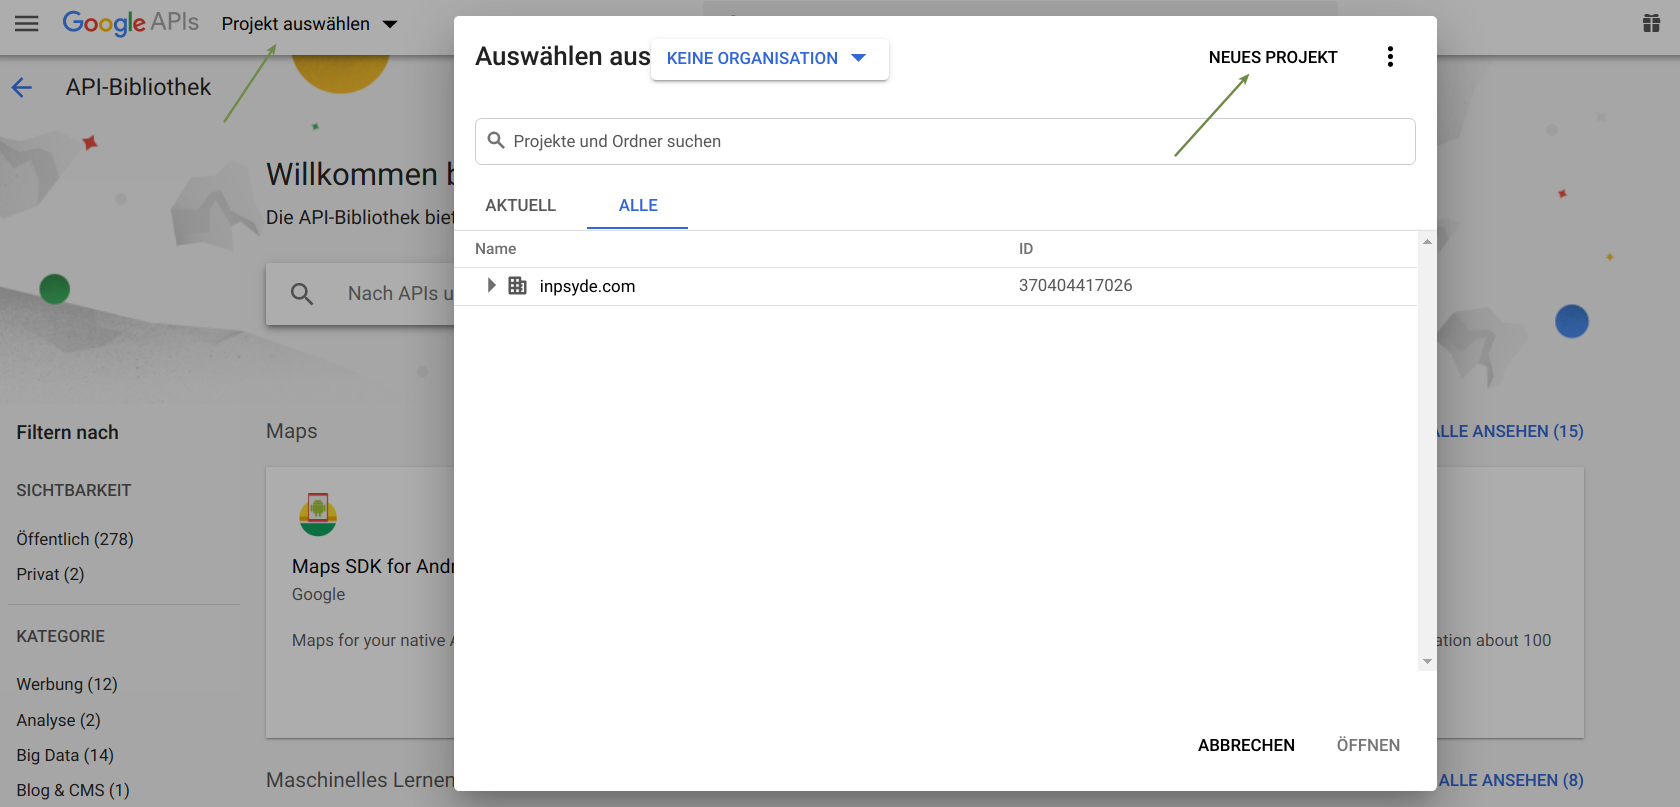 Ein neues Google Drive Projekt erstellen